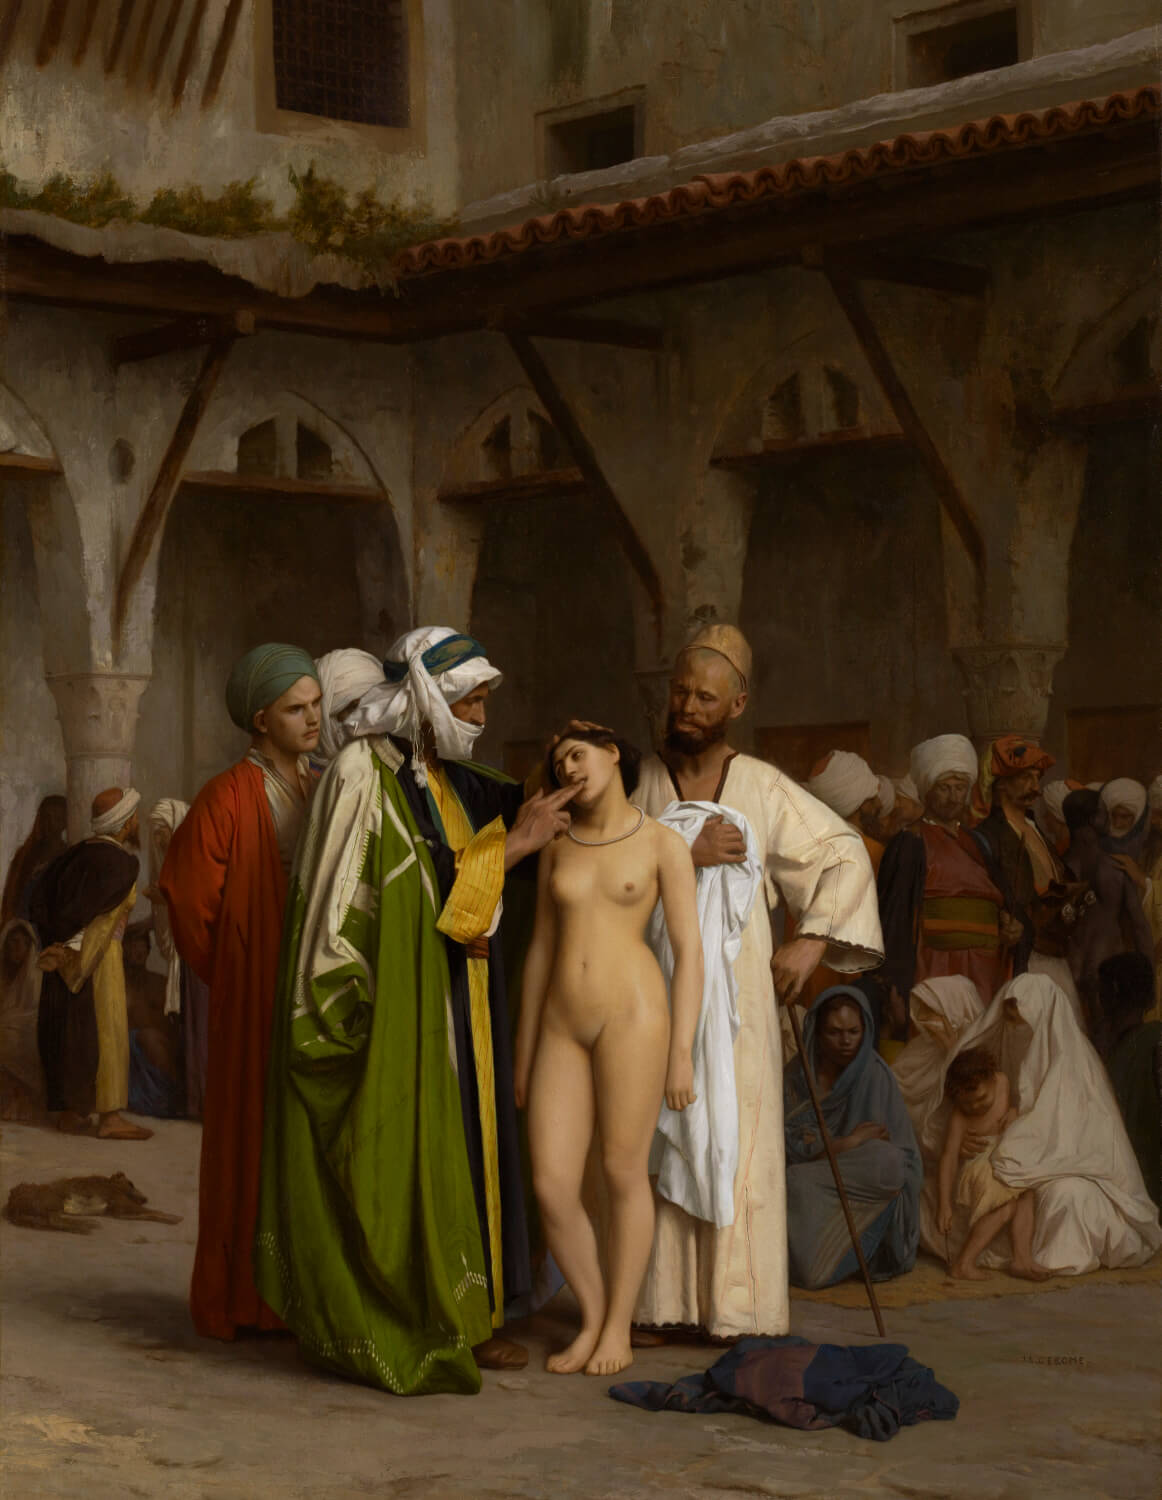 Arab concubines market